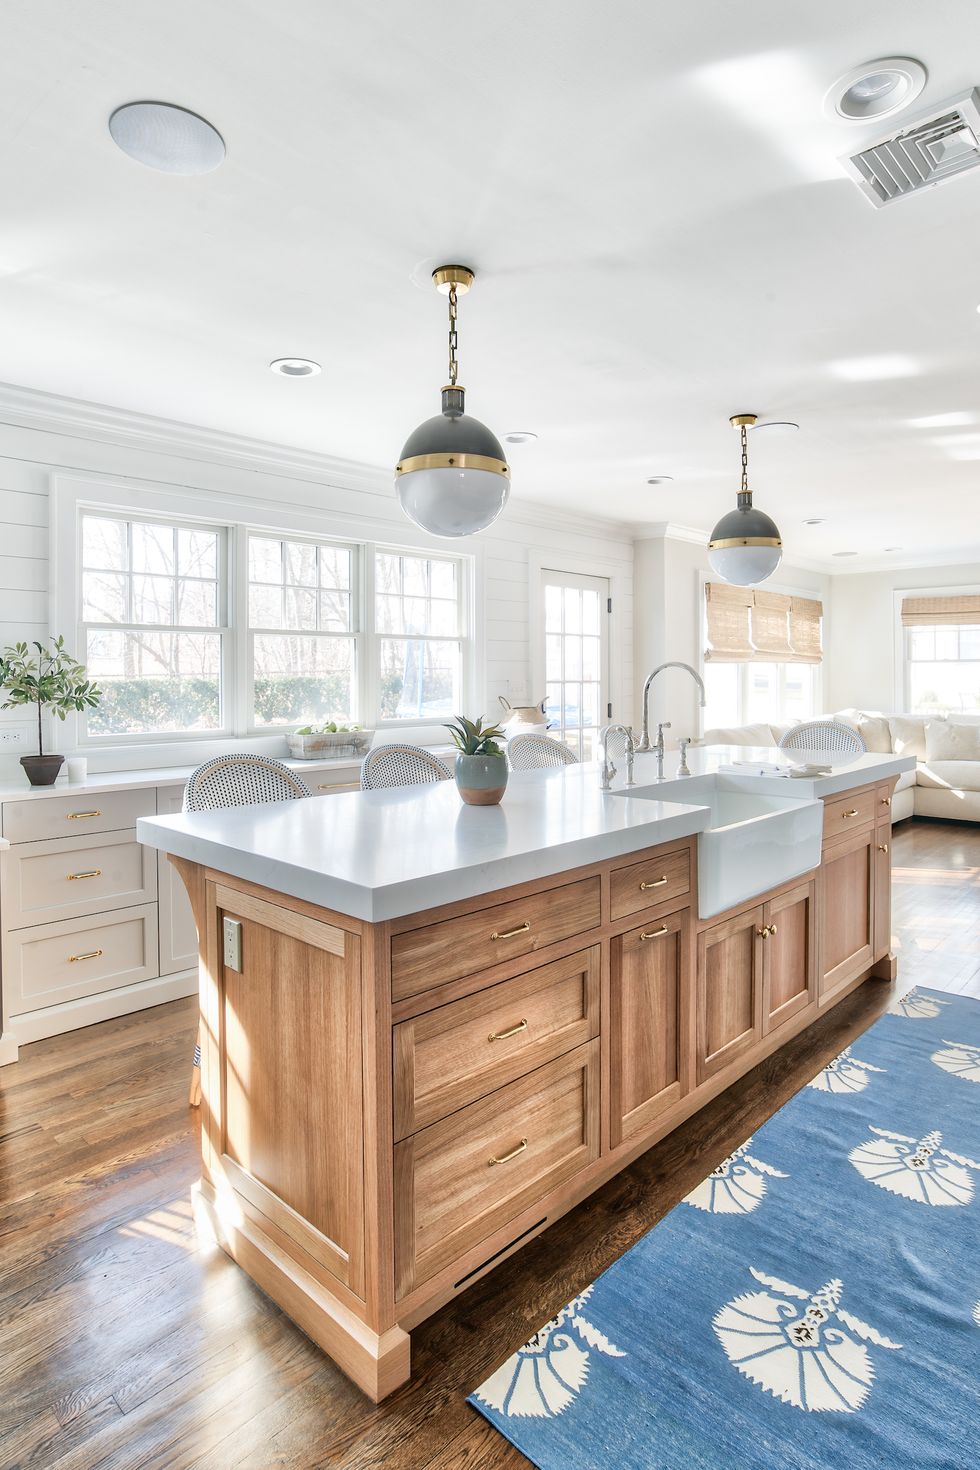 hình ảnh phòng bếp ngập tràn ánh sáng tự nhiên với đảo bếp bằng gỗ ở trung tâm, bề mặt bàn bếp màu xám sang trọng